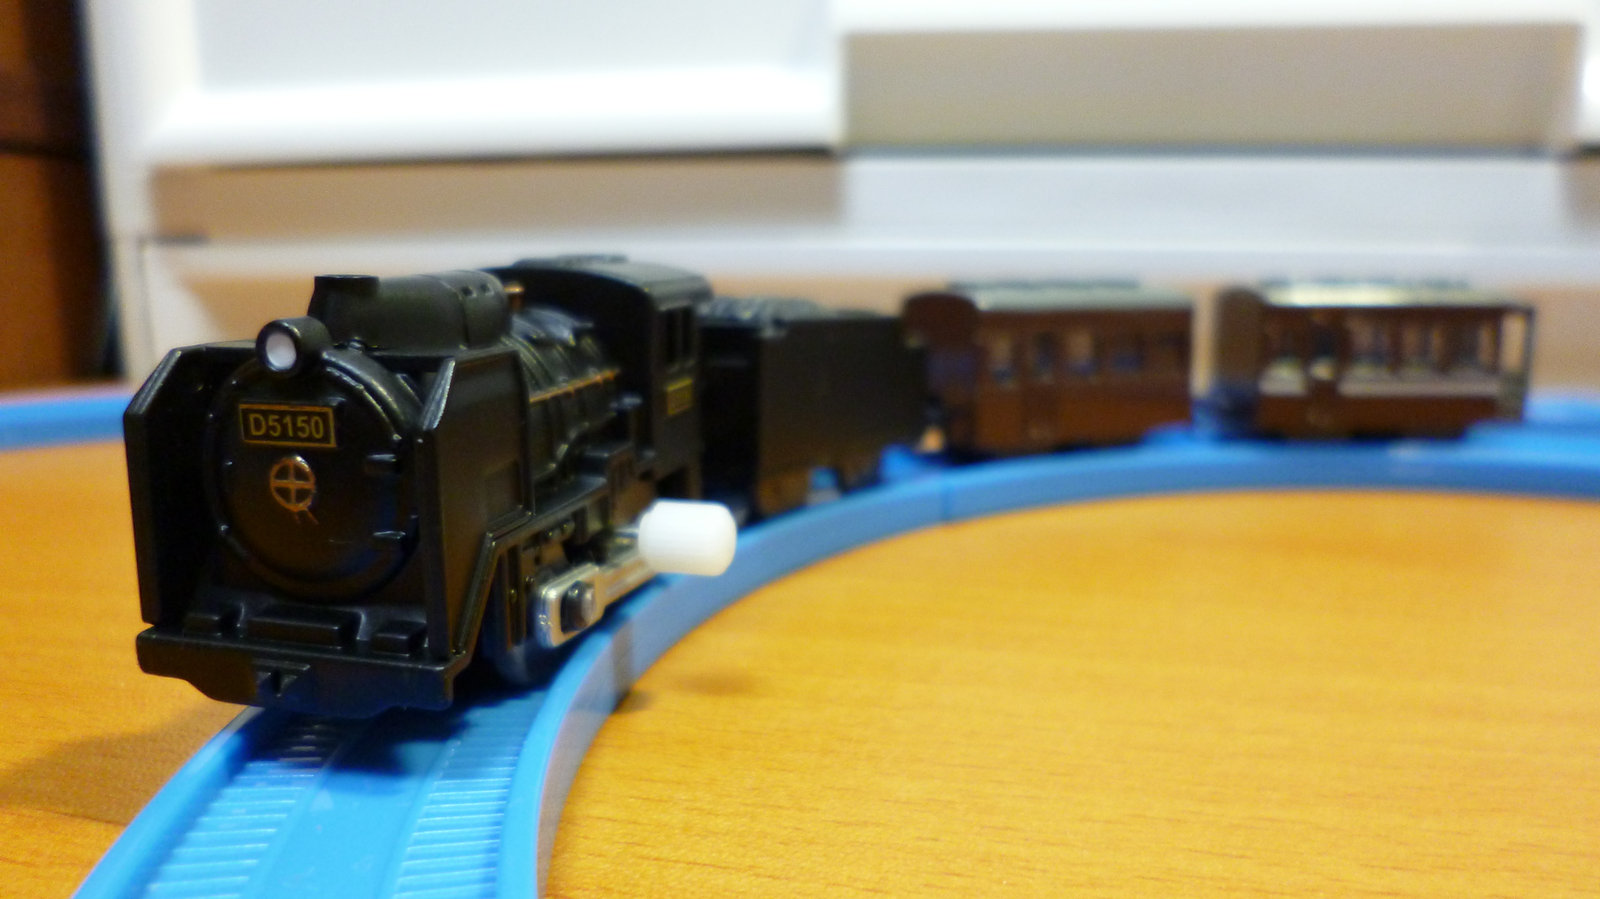 カプセルプラレール 蒸気機関車 SL D5150(ナメクジ) レア - 鉄道模型